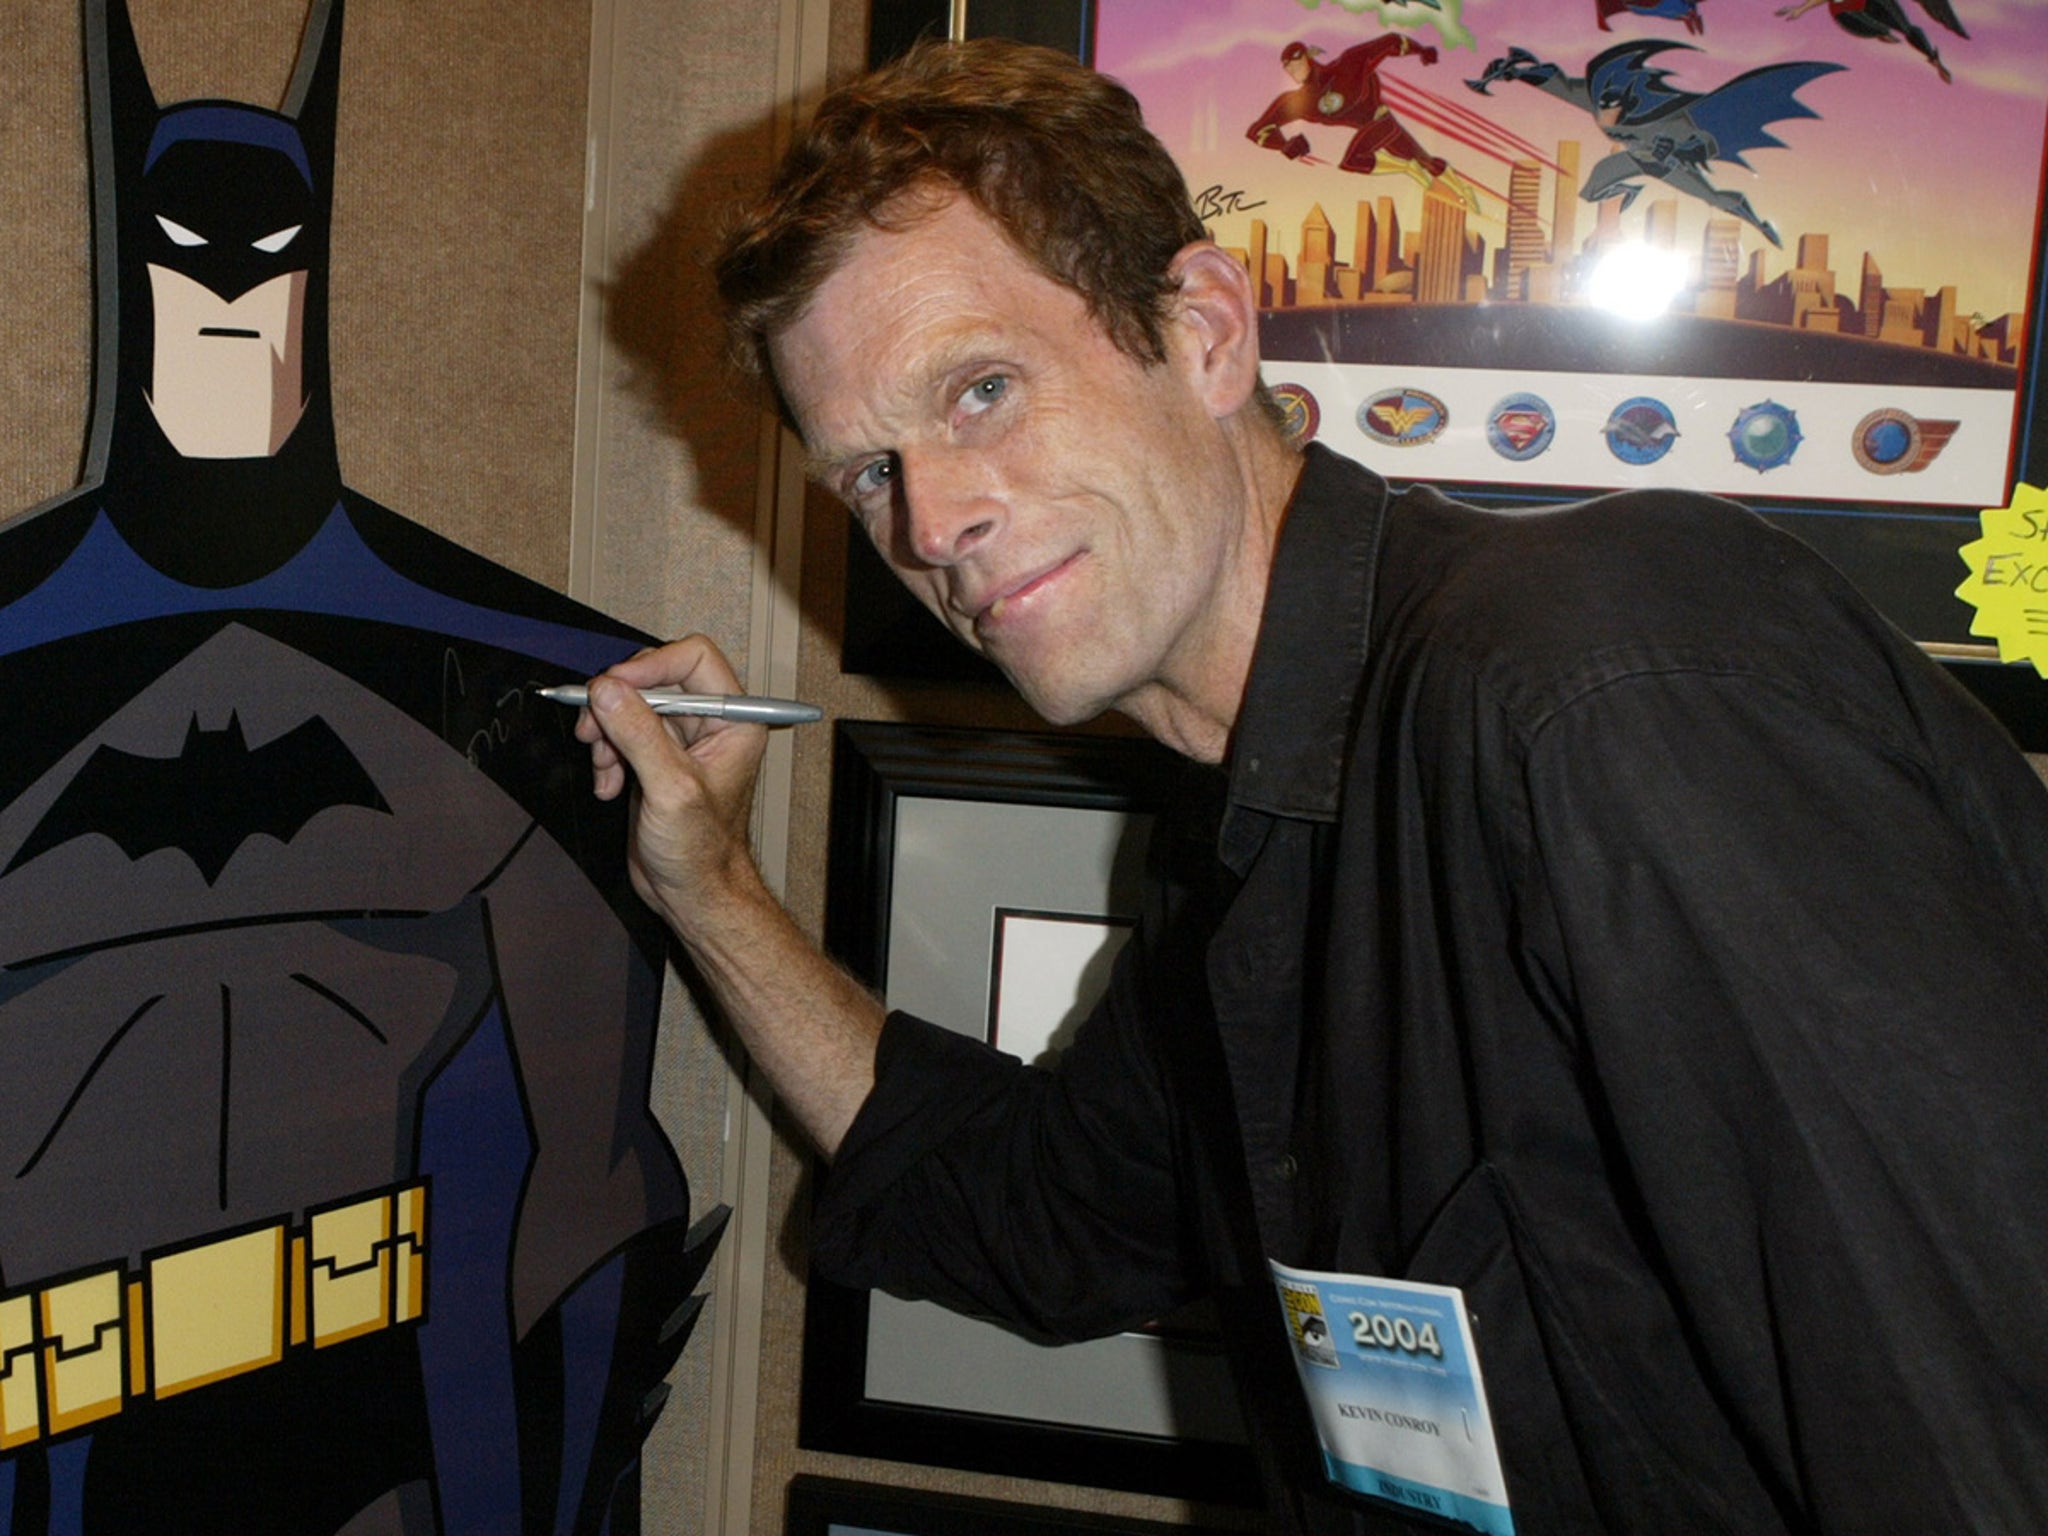 Batman voice actor Kevin Conroy has died, age 66